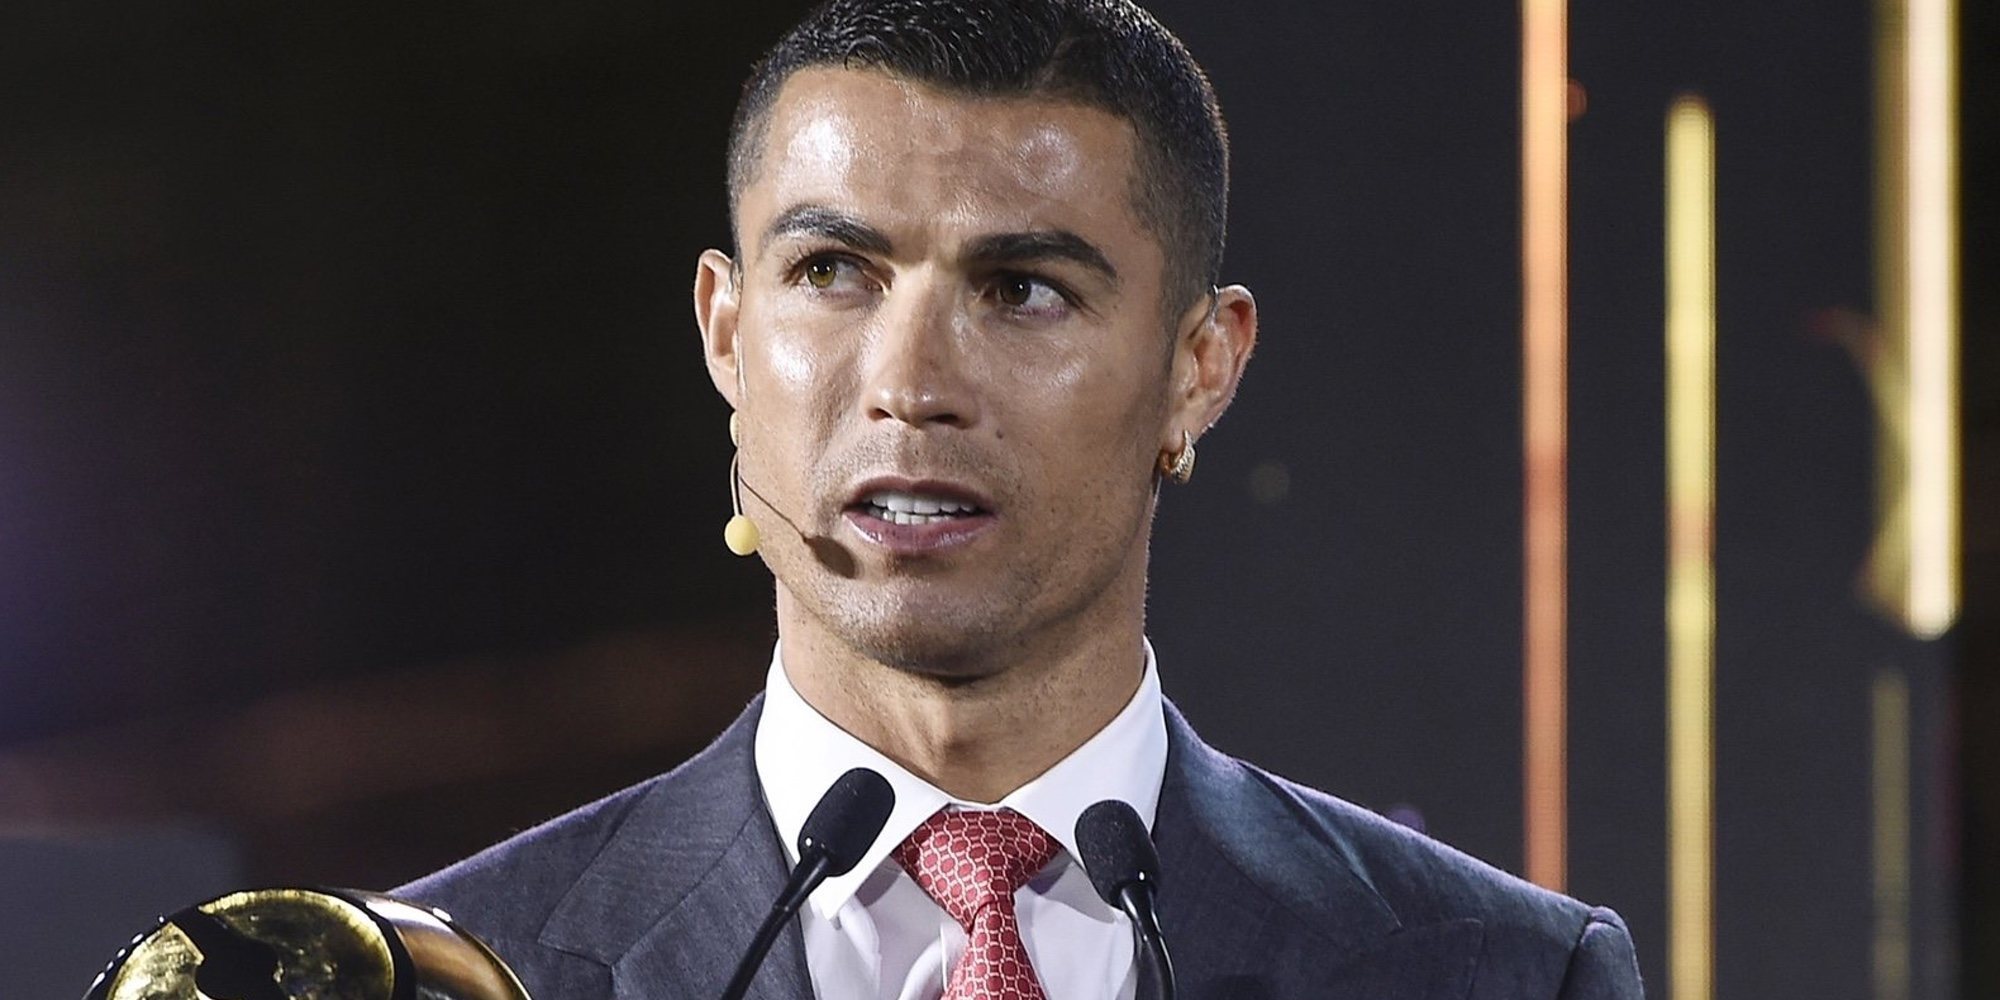 La peculiar 'mudanza' de Cristiano Ronaldo: traslada sus coches más lujosos a Madrid ante su posible regreso